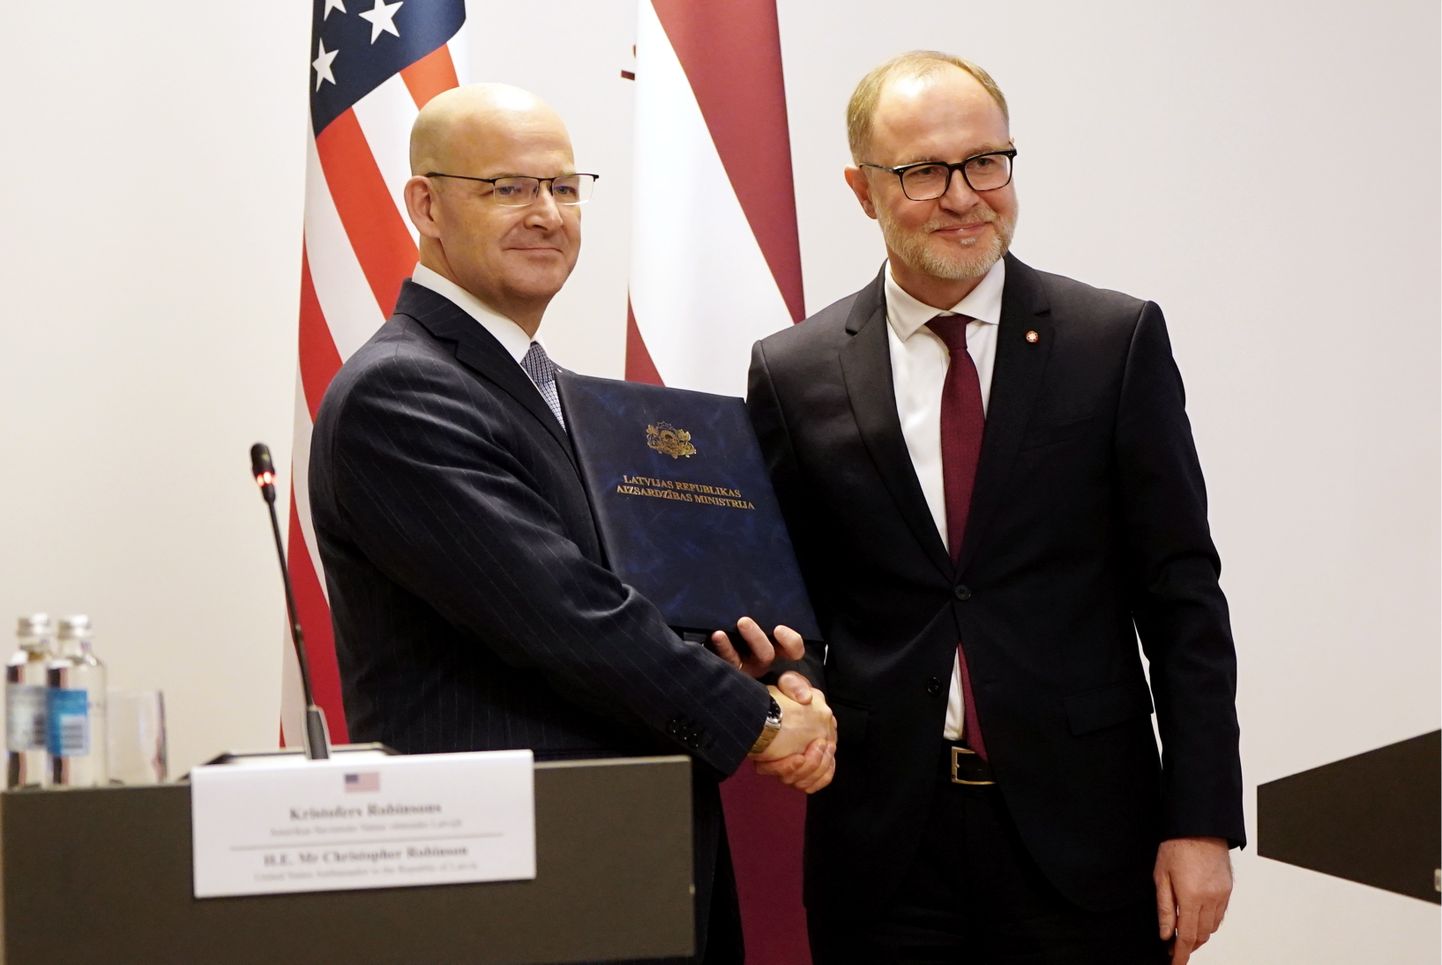 ASV vēstnieks Latvijā Kristofers Robinsons (no kreisās) un aizsardzības ministrs Andris Sprūds piedalās preses konferencē, kurā paziņo par līguma noslēgšanu par ASV uzņēmuma "Raytheon" un Norvēģijas uzņēmuma "Kongsberg" ražoto pretkuģu raķešu sistēmu "Naval Strike Missile" iegādi.